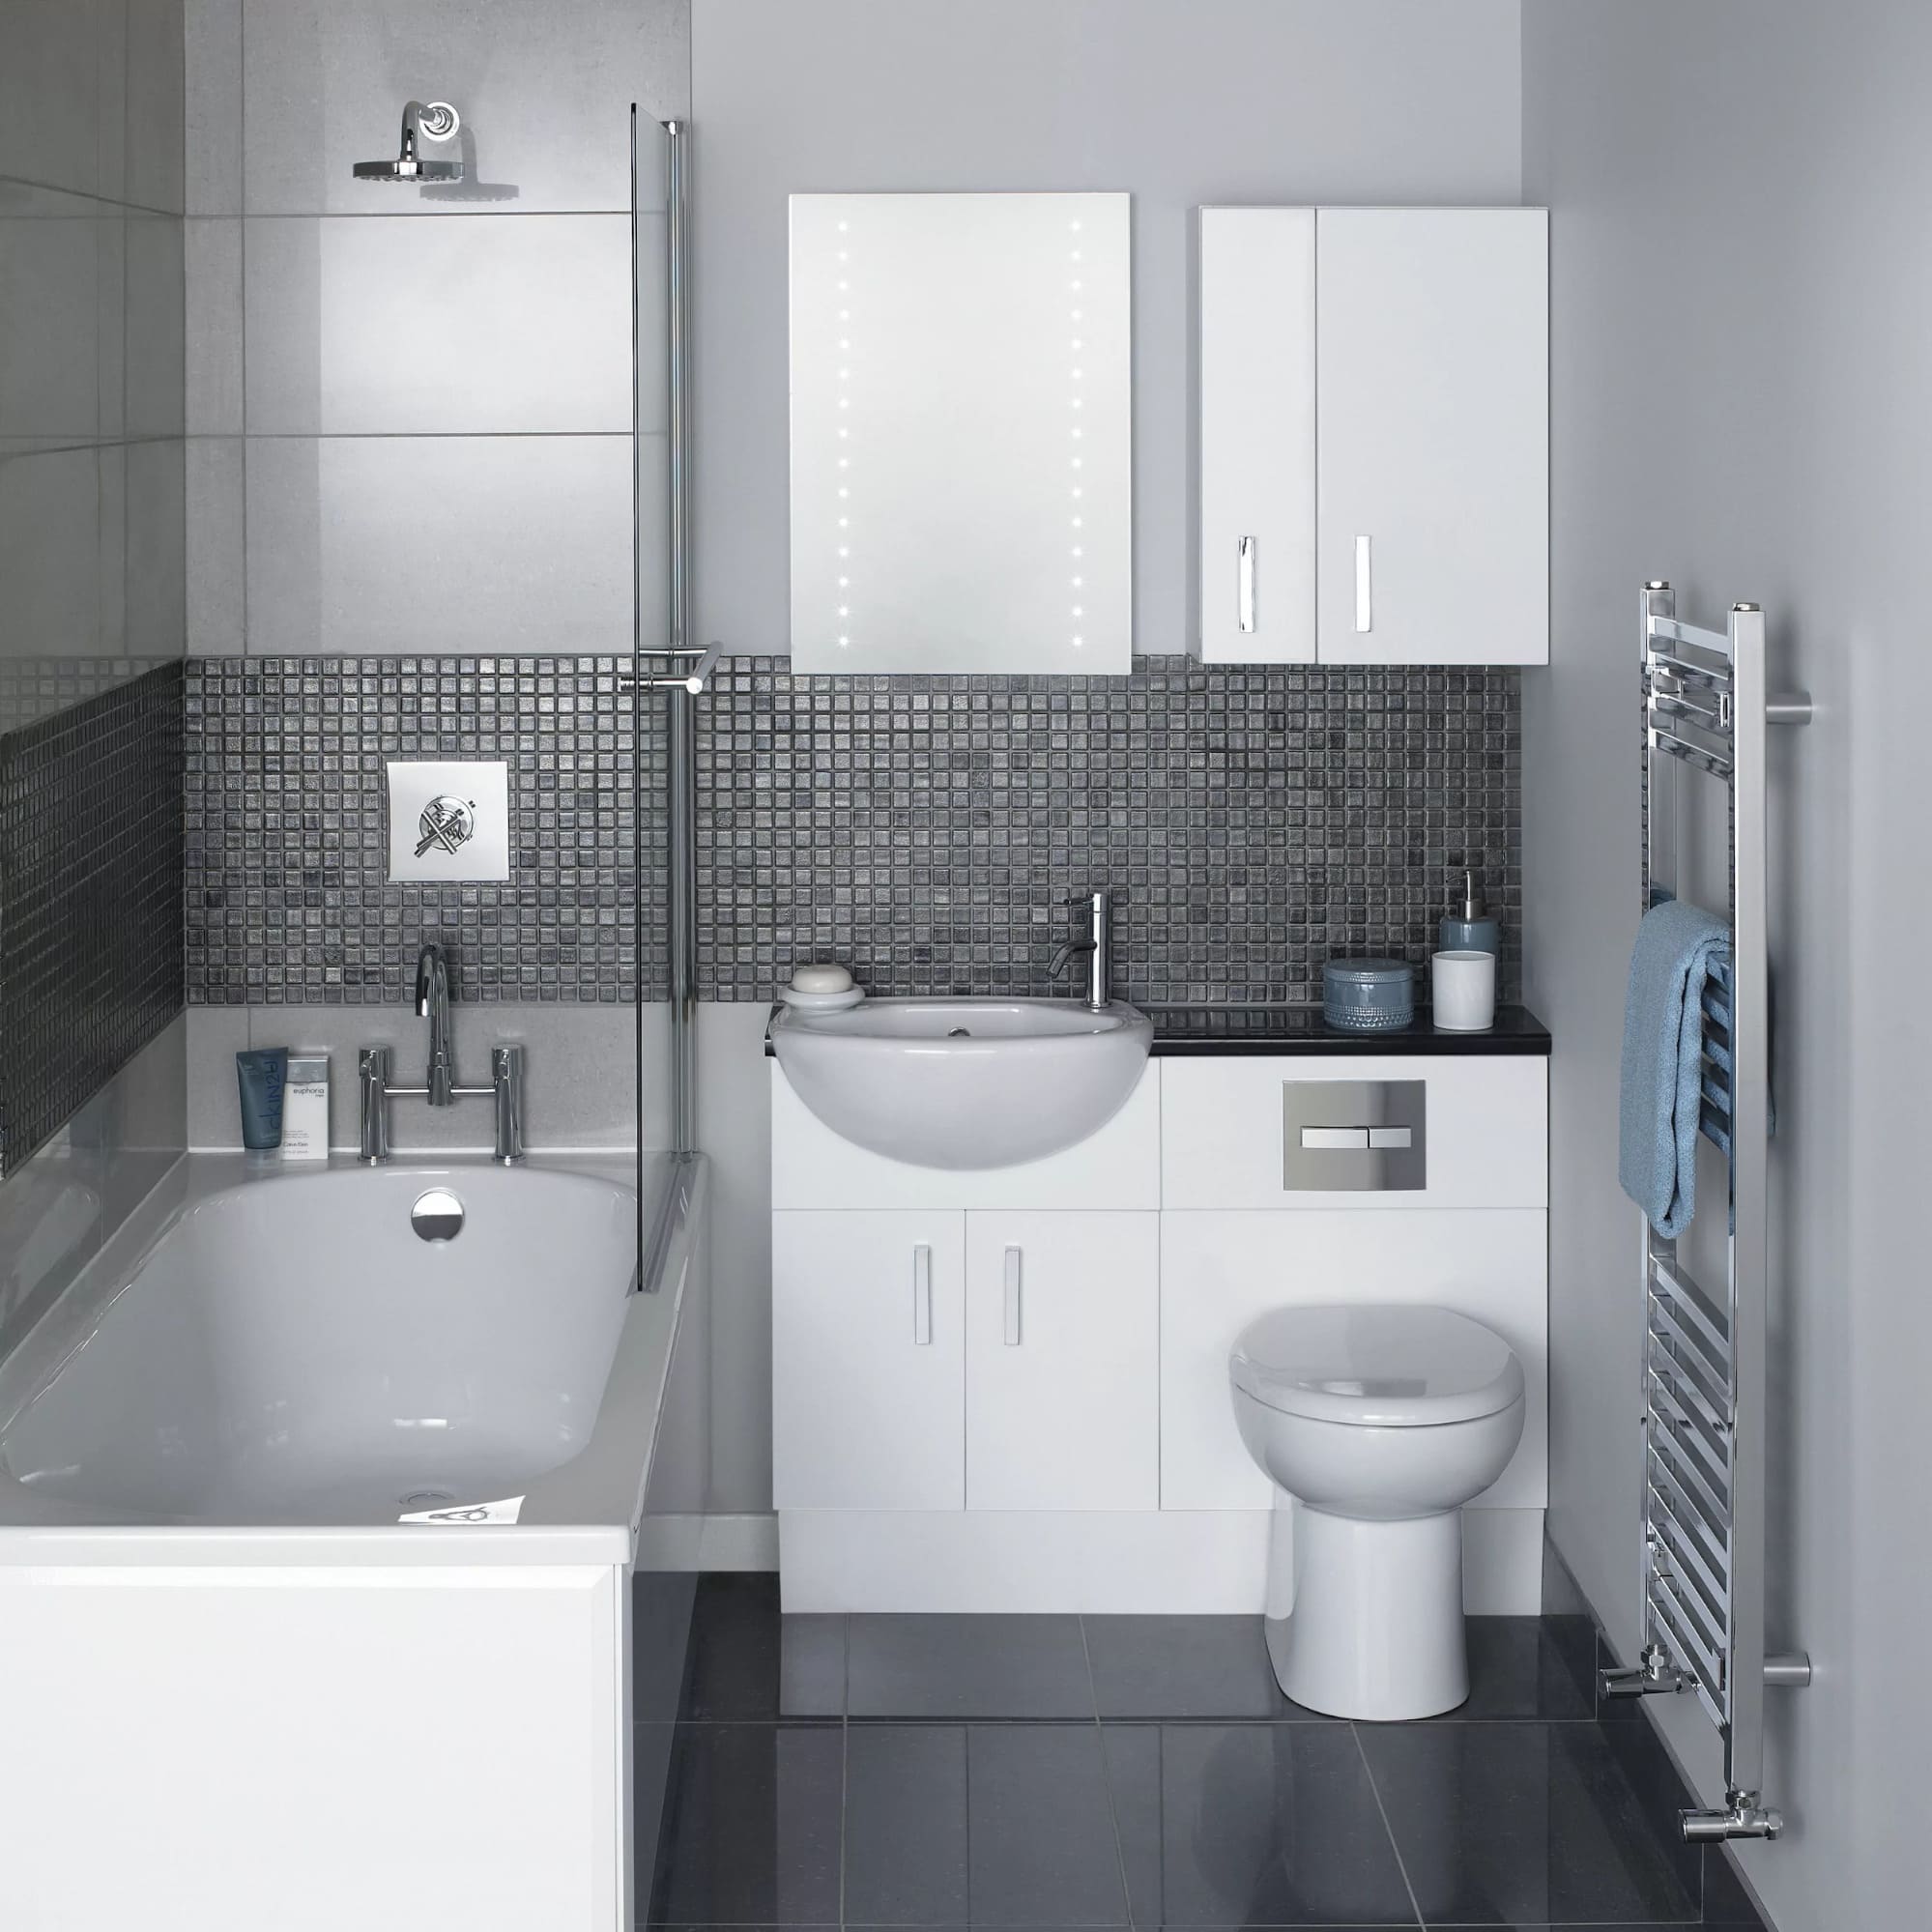 Дизайн ванной комнаты маленького размера - рассматриваем возможные варианты